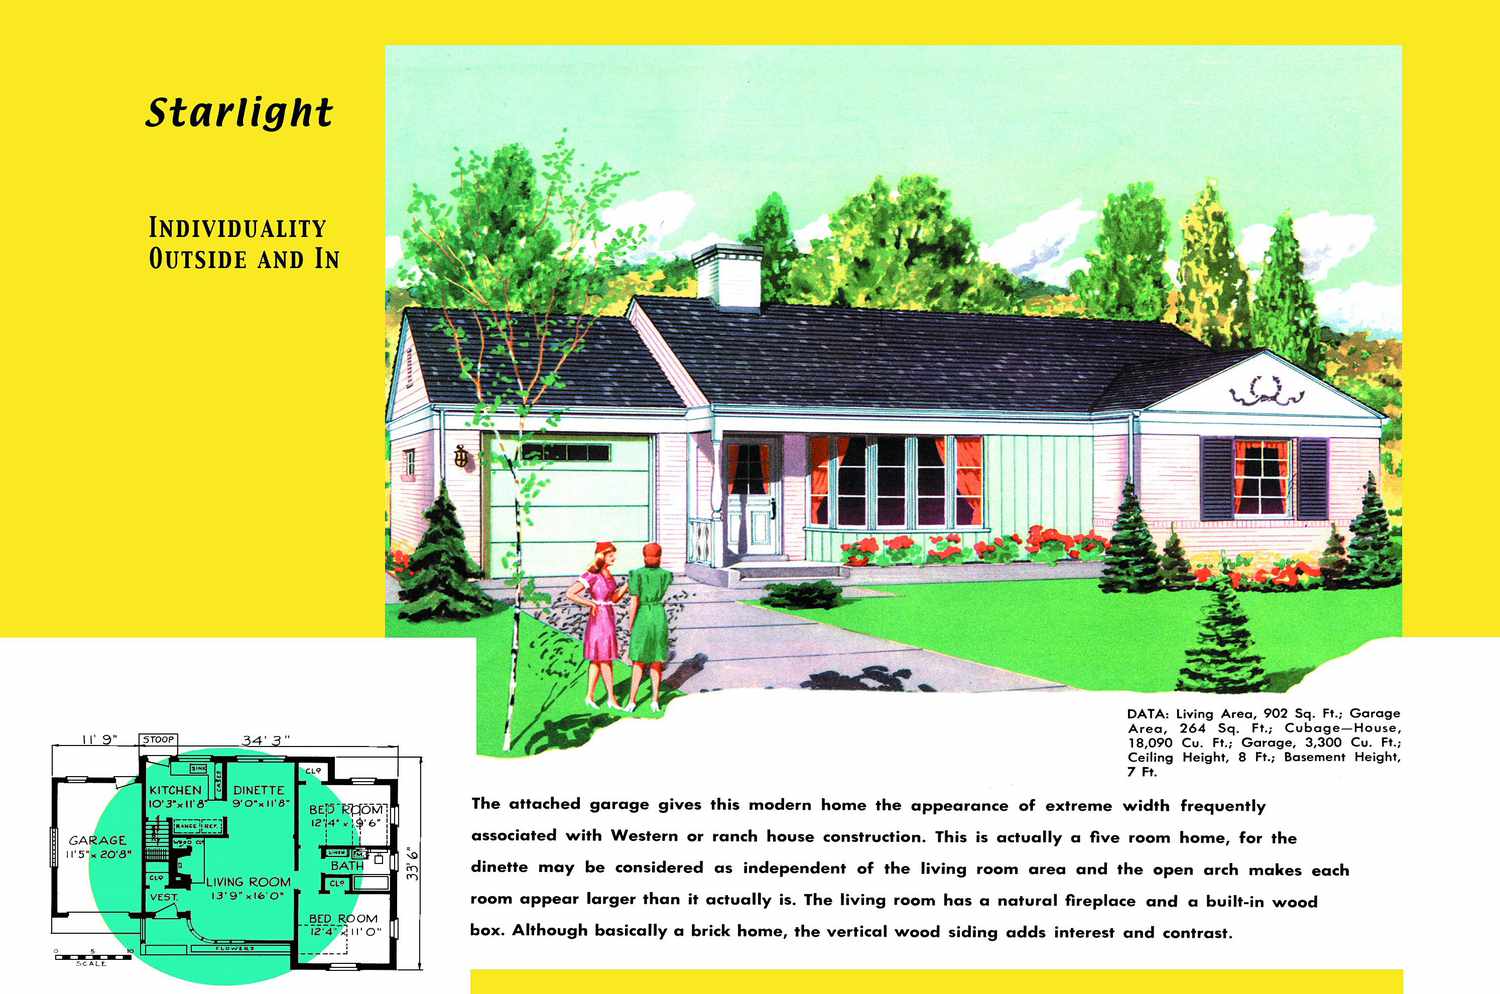 Plano y render de una casa estilo rancho de los años 50 llamada Starlight con garaje anexo